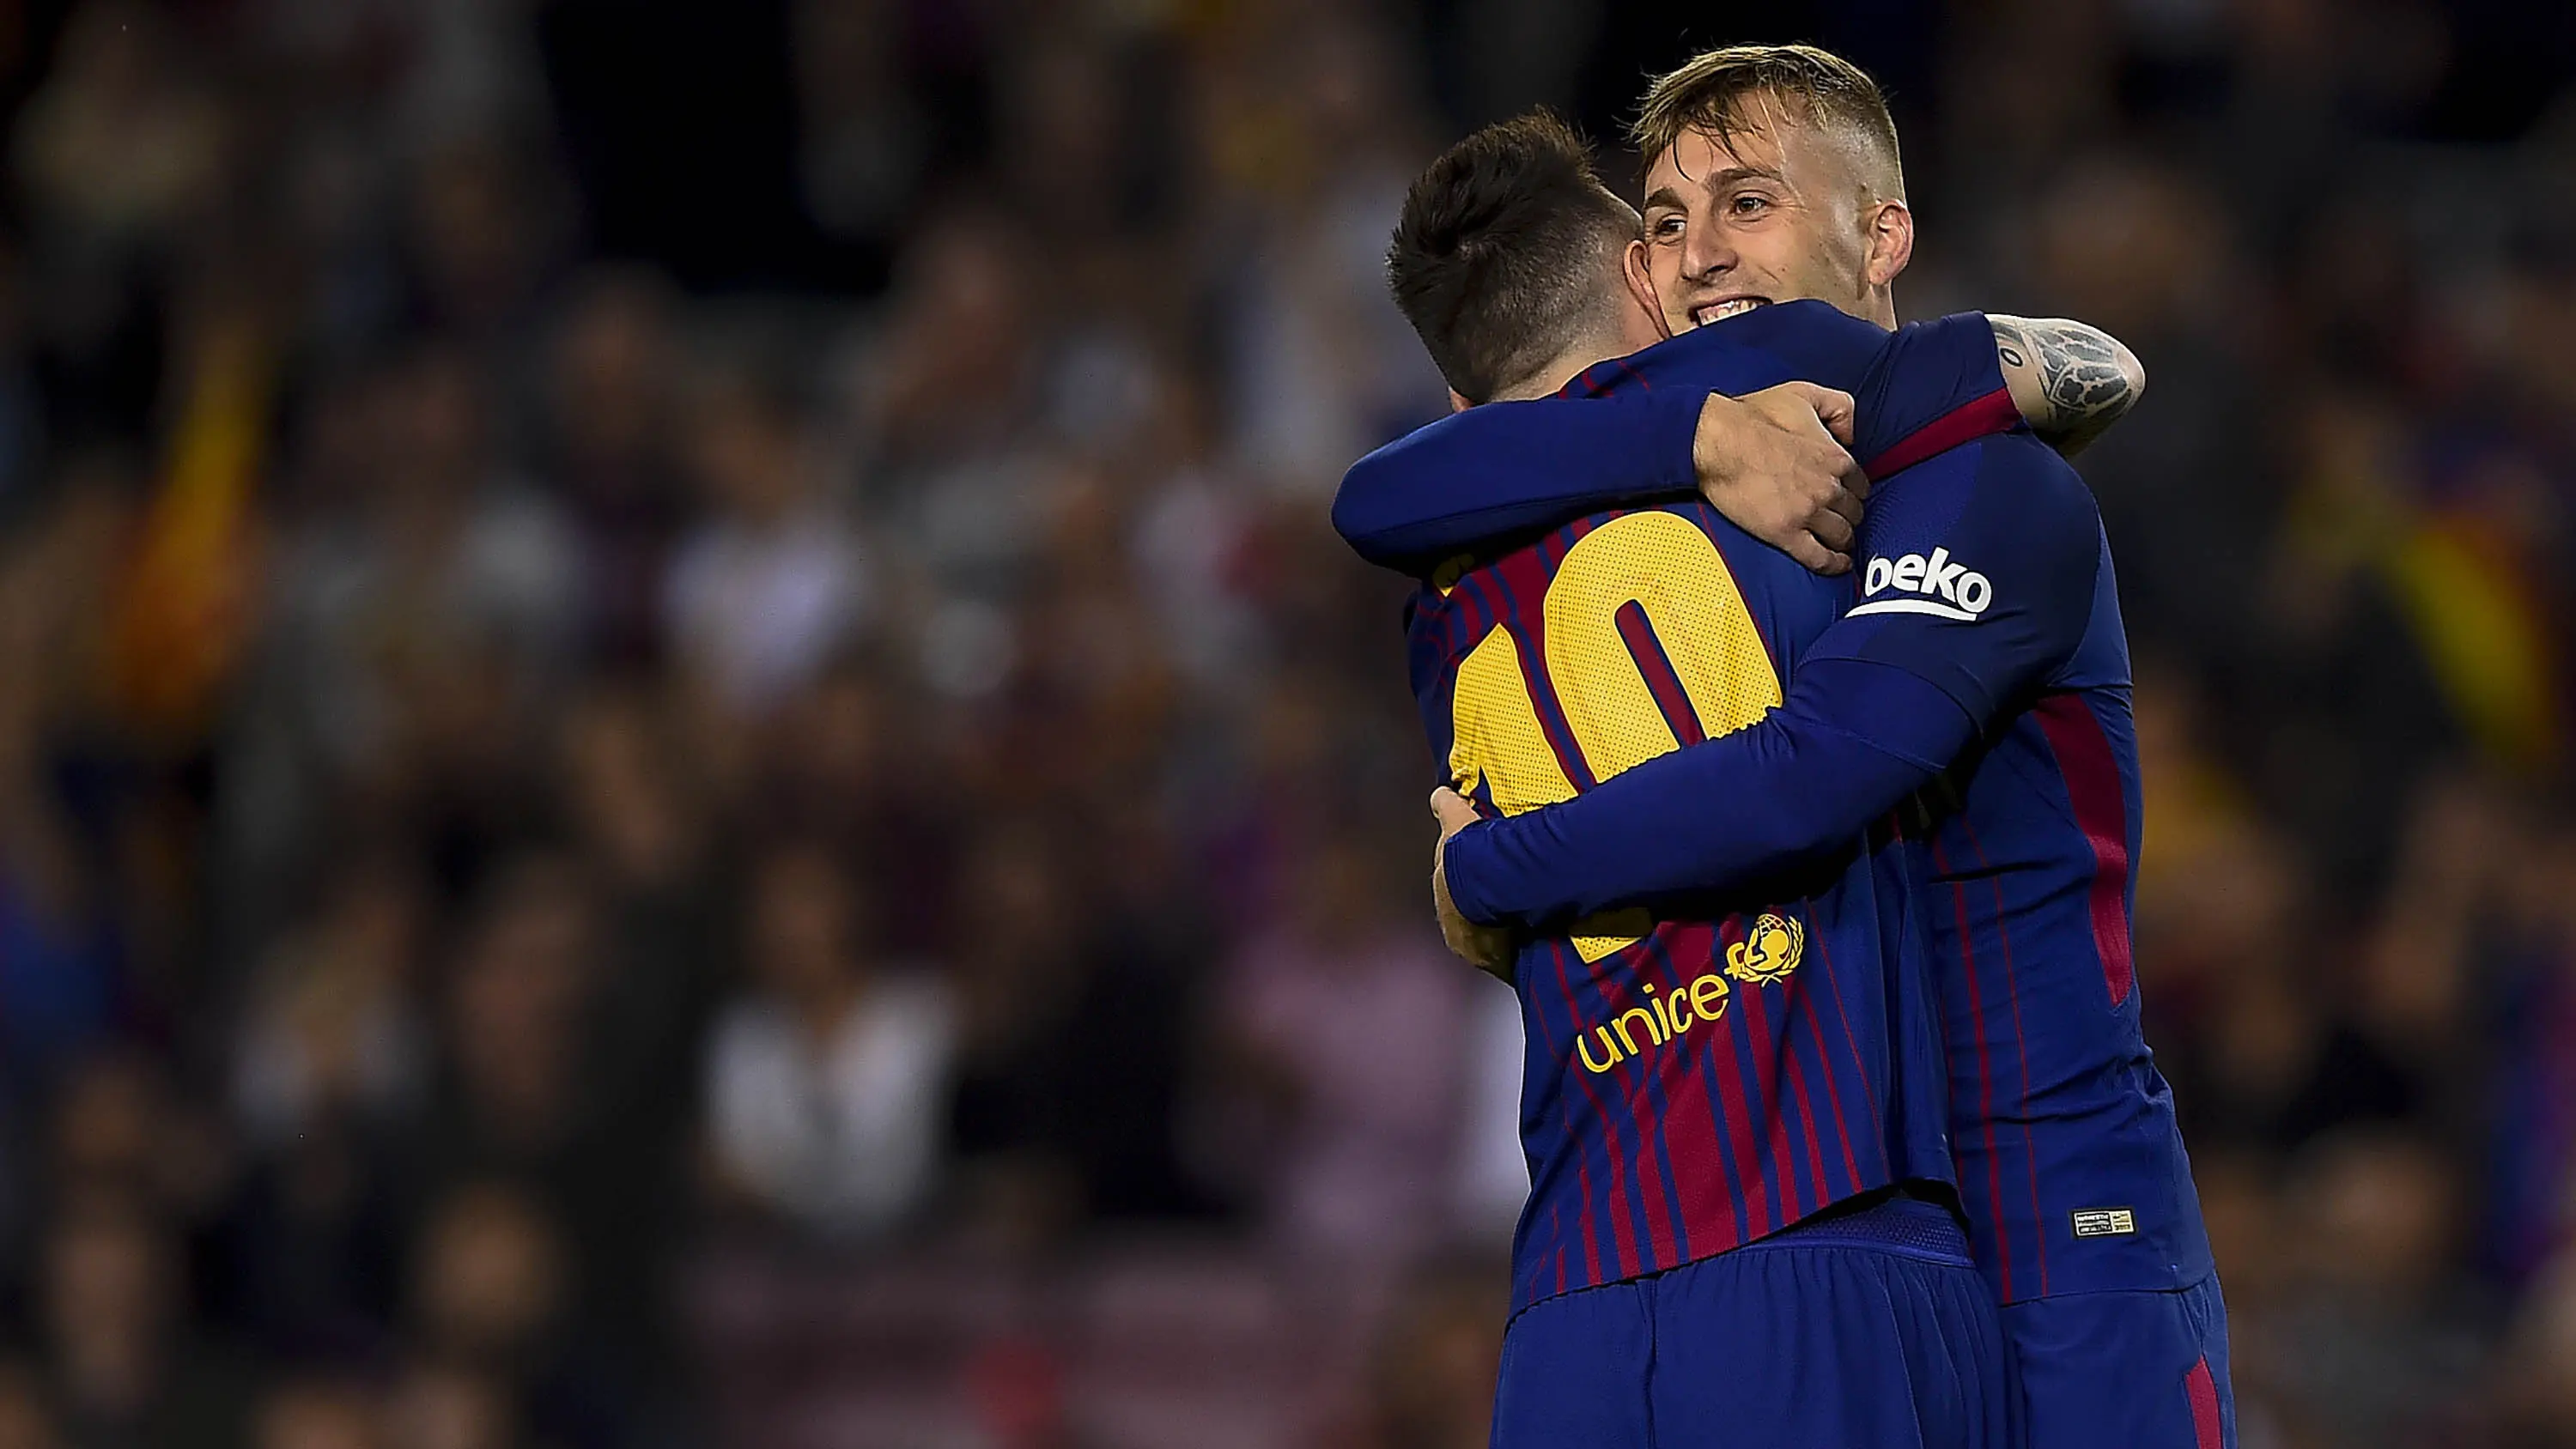 Gelandang Barcelona, Gerard Deulofeu, memeluk Lionel Messi usai membobol gawang Malaga pada laga La Liga di Stadion Camp Nou, Barcelona, Sabtu (21/10/2017). Barcelona menang 2-0 atas Malaga. (AFP/Josep Lago)